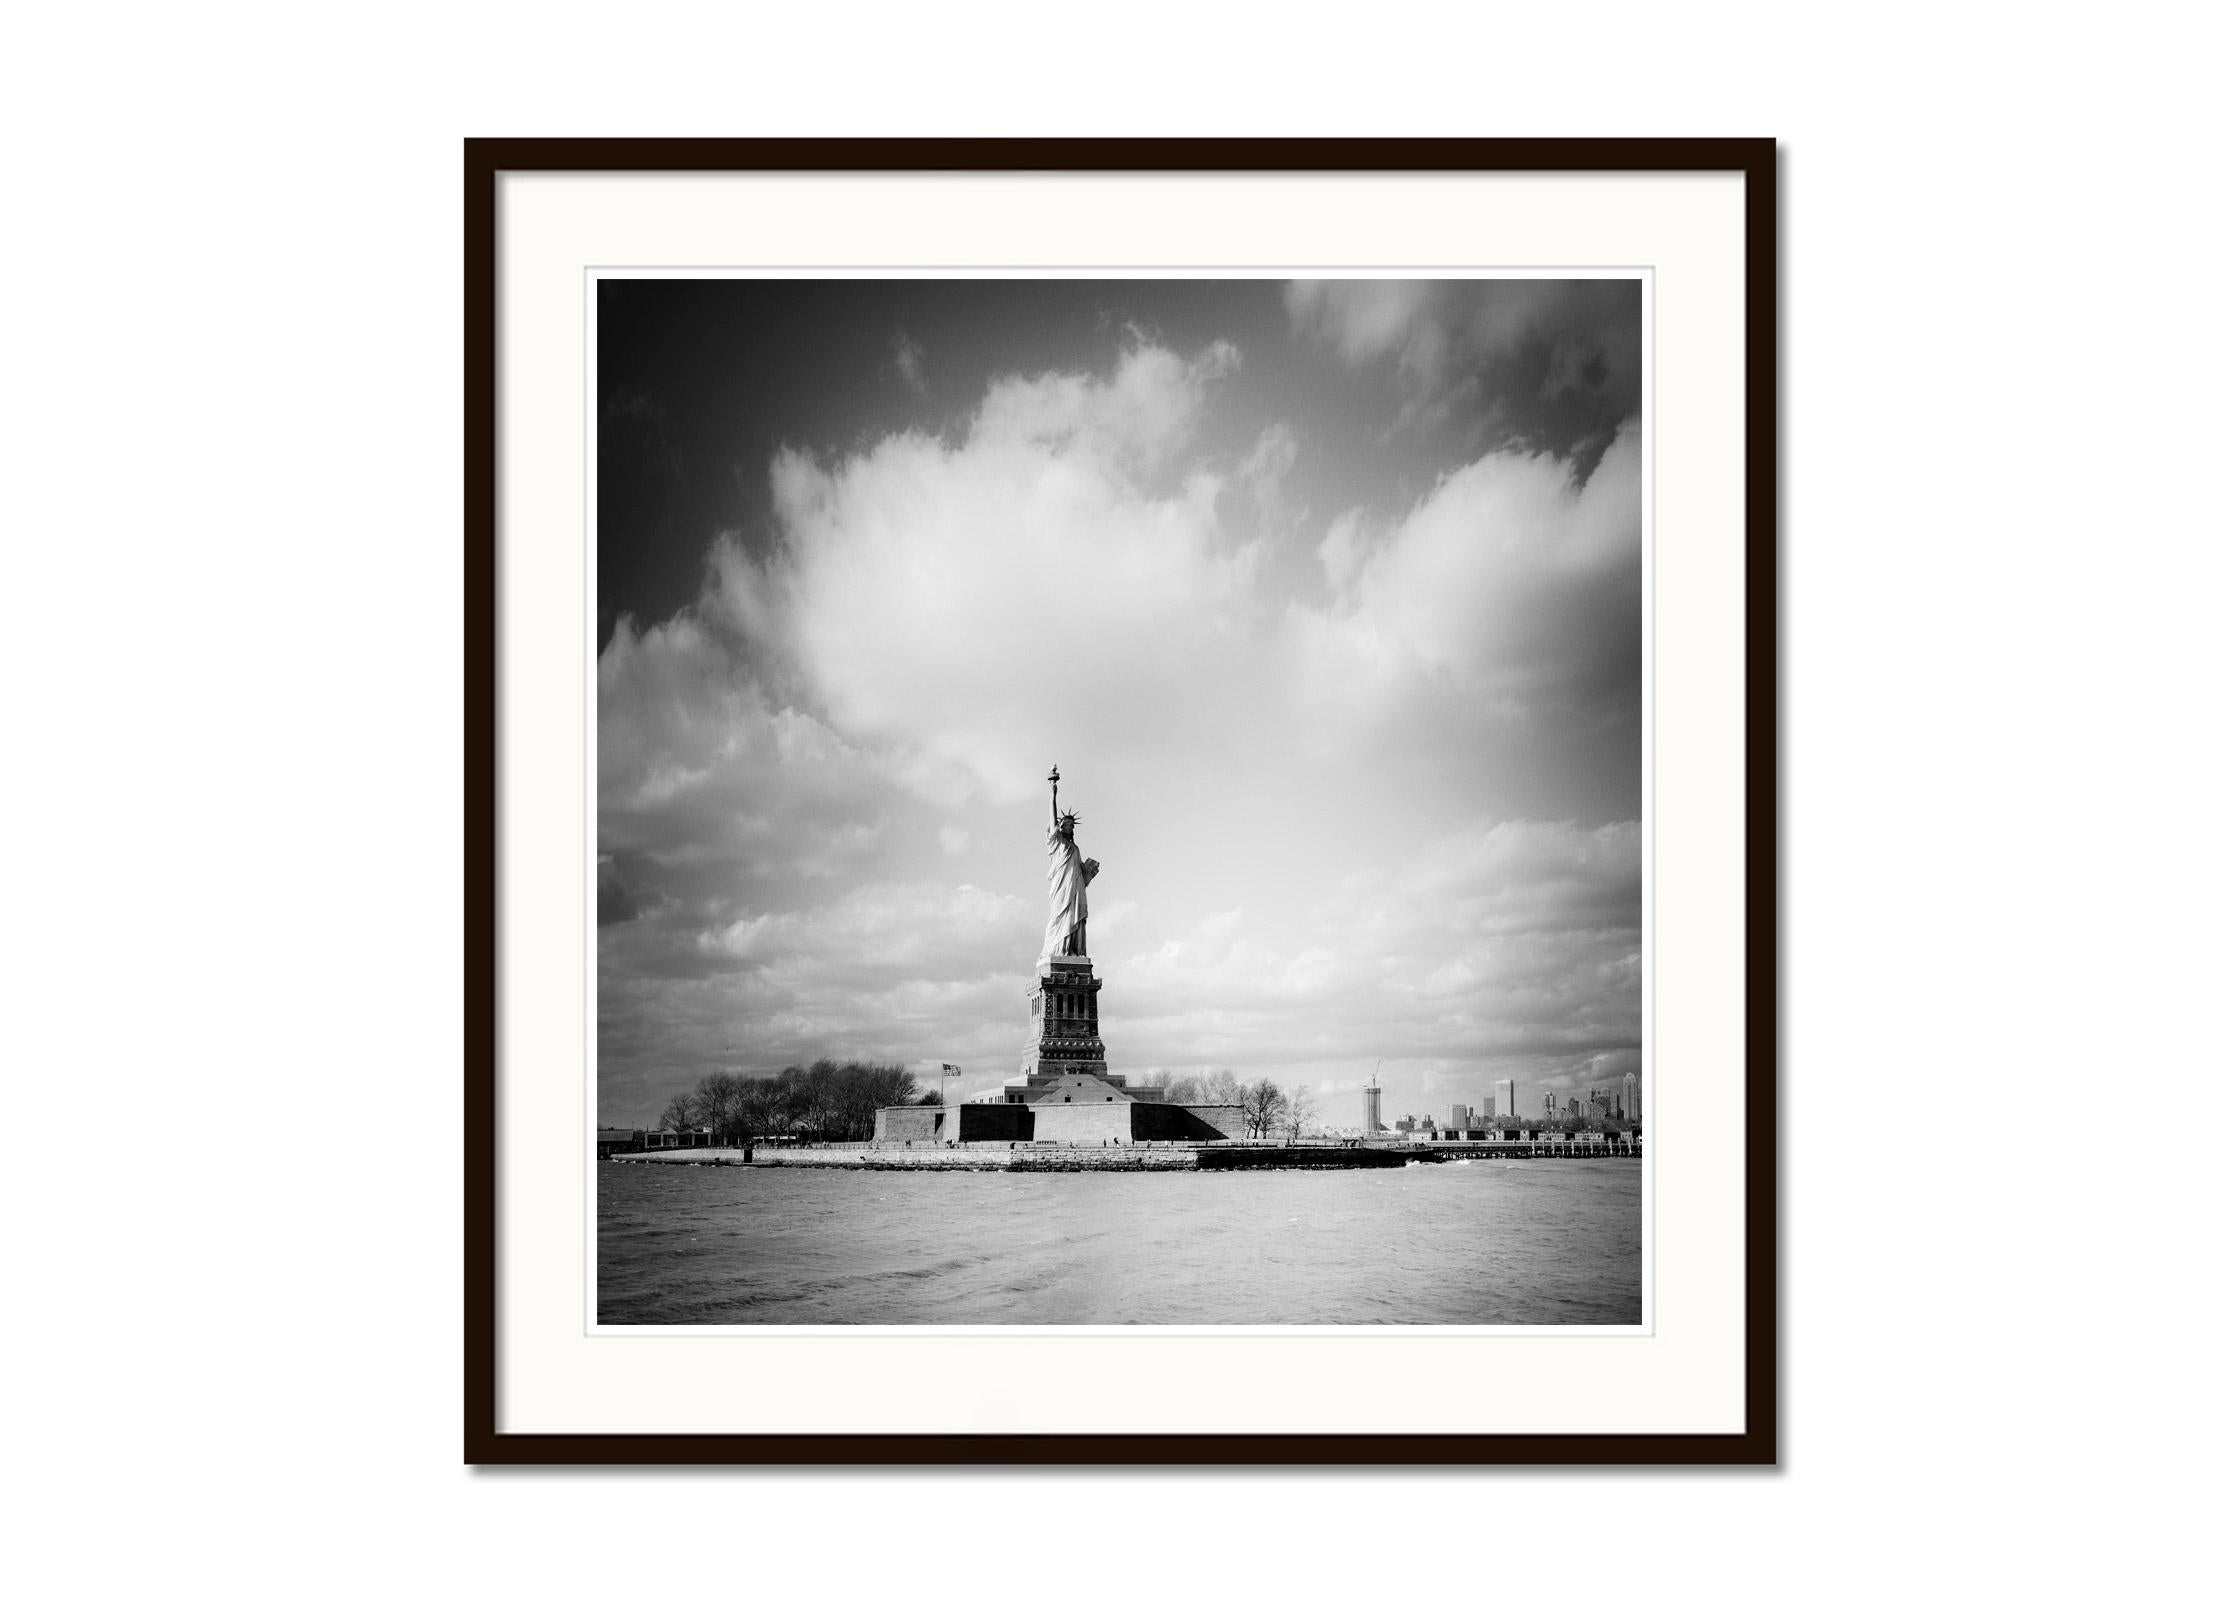 Statue der Freiheitsstatue, New York City, USA, Schwarz-Weiß-Fotografie, Landschaft (Grau), Black and White Photograph, von Gerald Berghammer